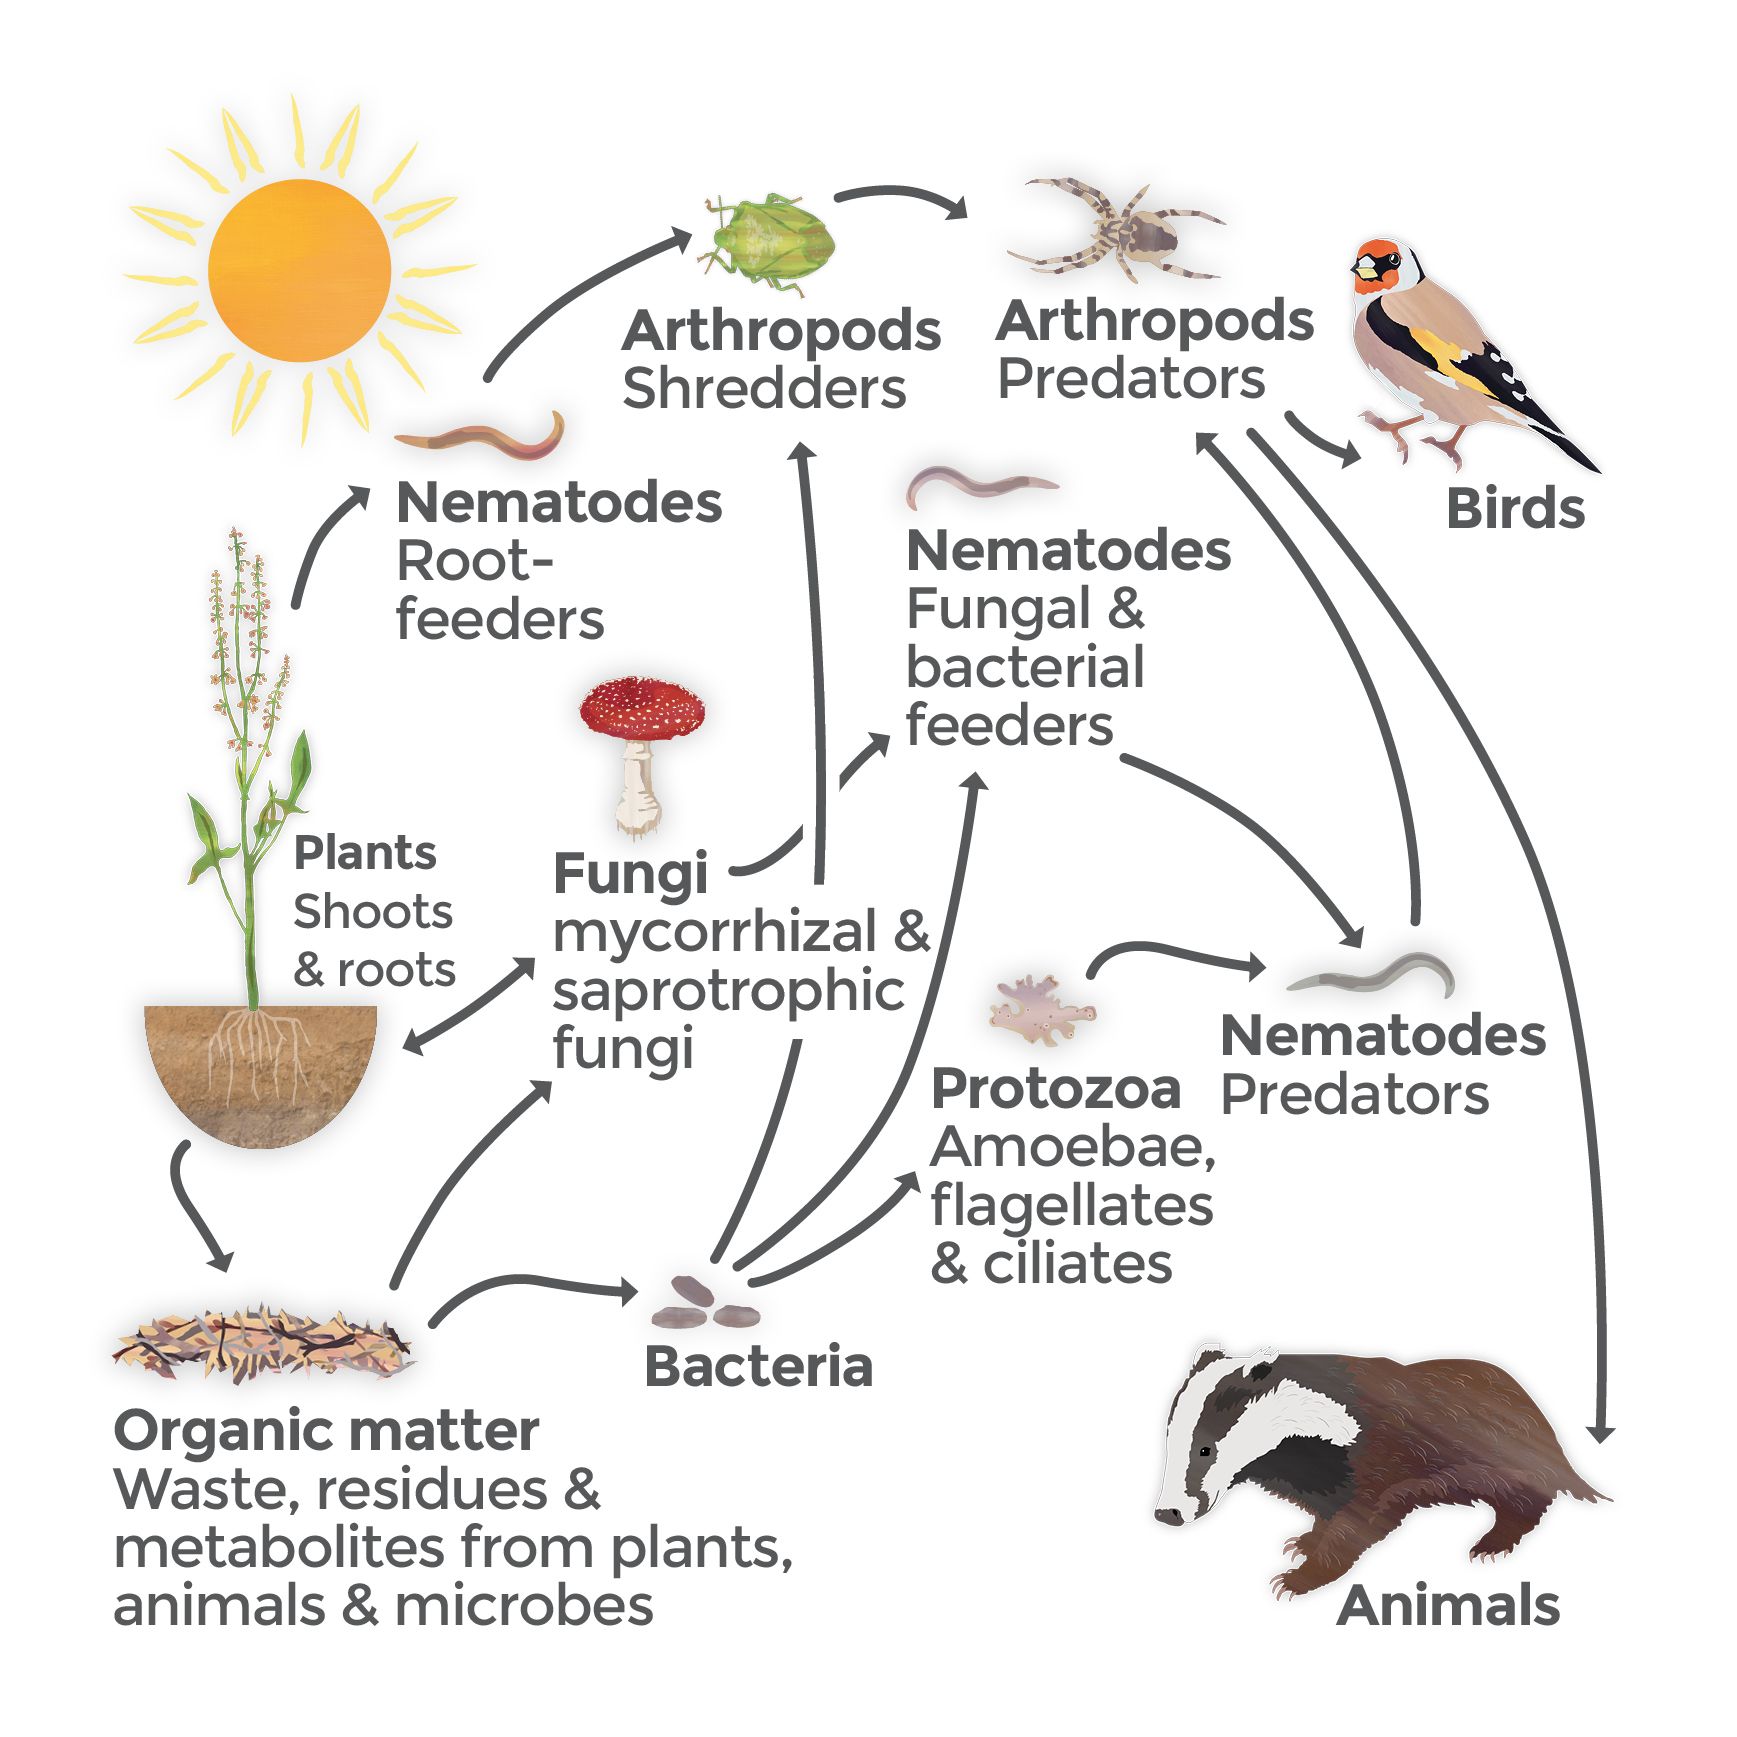 Biodiversity - Graphic